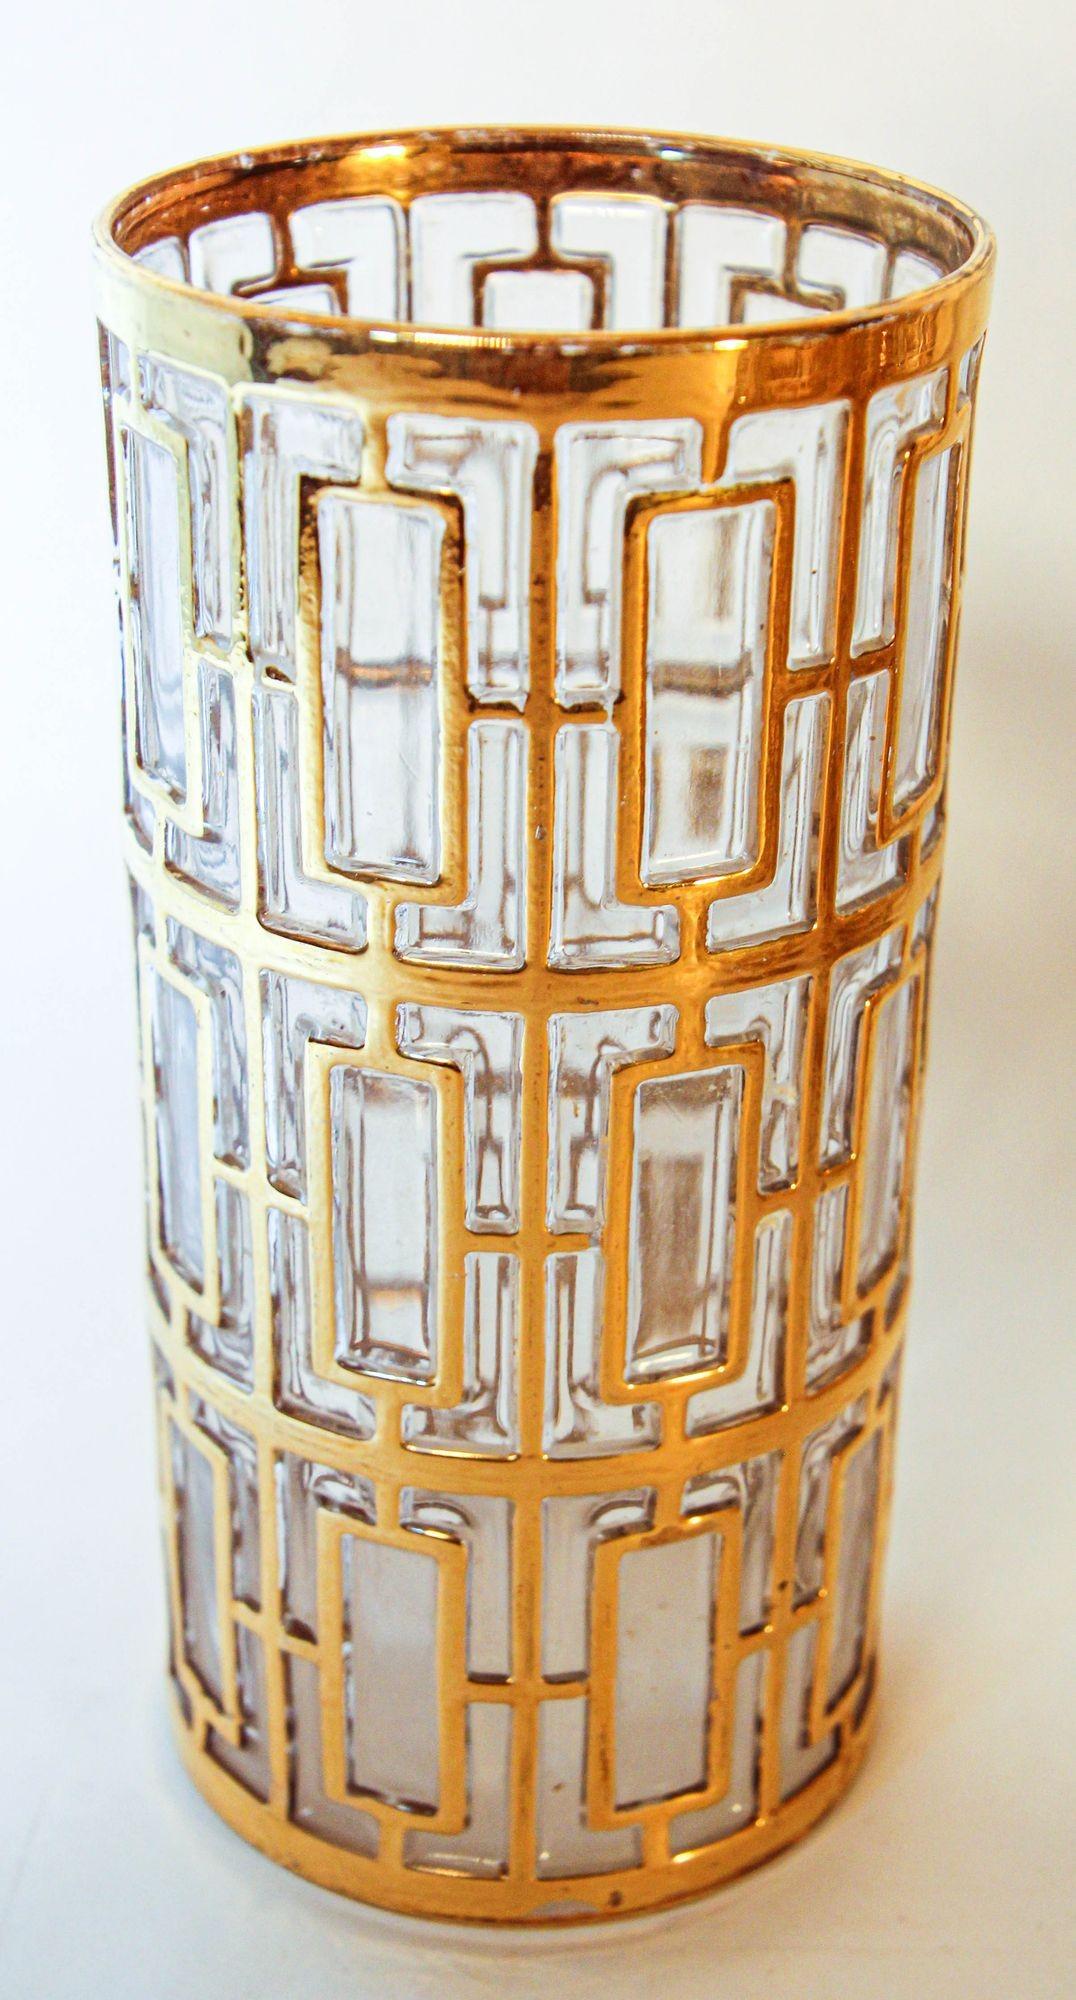 Vintage Imperial Glass Gold Shoji Long Glasses Set Regency Hollywood, 1960s.
Rare collection de verres à boire Imperial Shoji gold bar set dans la série 